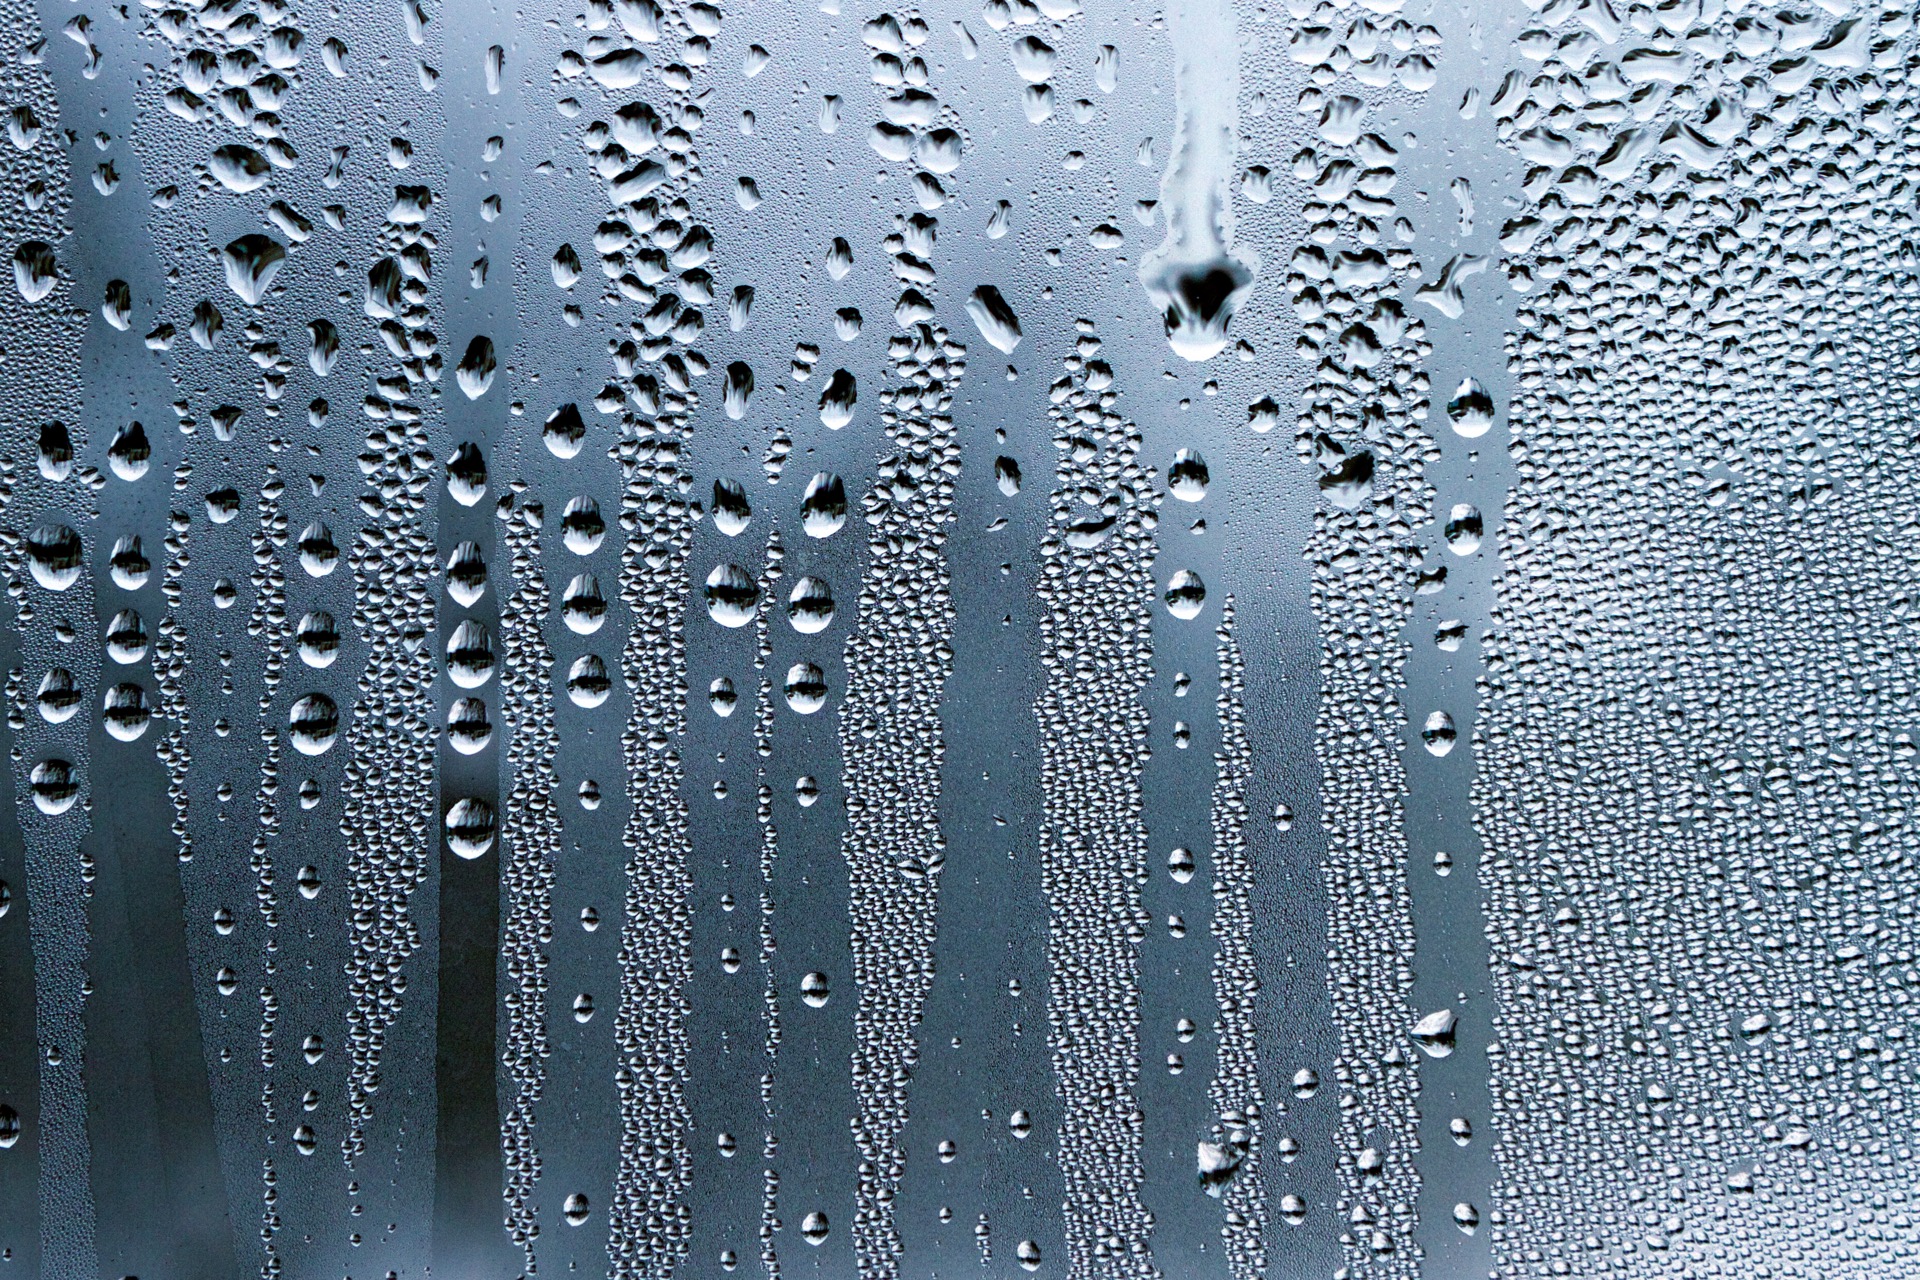 La condensation, qu'elle soit liquide ou solide, représente une transition de phase essentielle dans le cycle de la matière : formation des gouttes de pluie ou des cristaux de glace, nuages ou cristallisation… © Dmitry Shishov, Adobe Stock